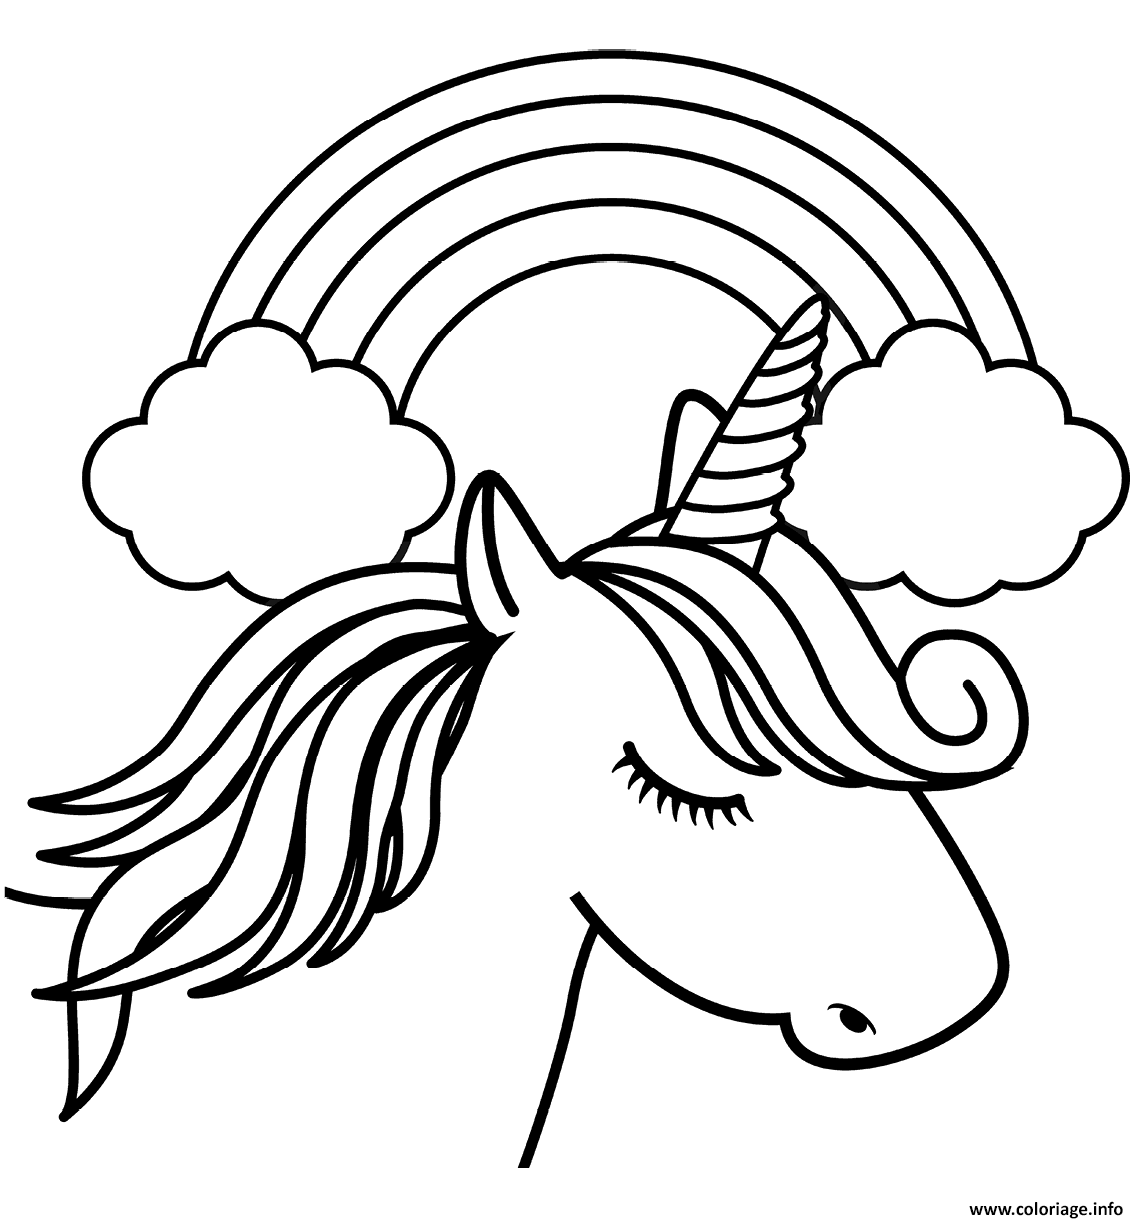 Dessin licorne blanche avec une corne unique devant un arc en ciel Coloriage Gratuit à Imprimer